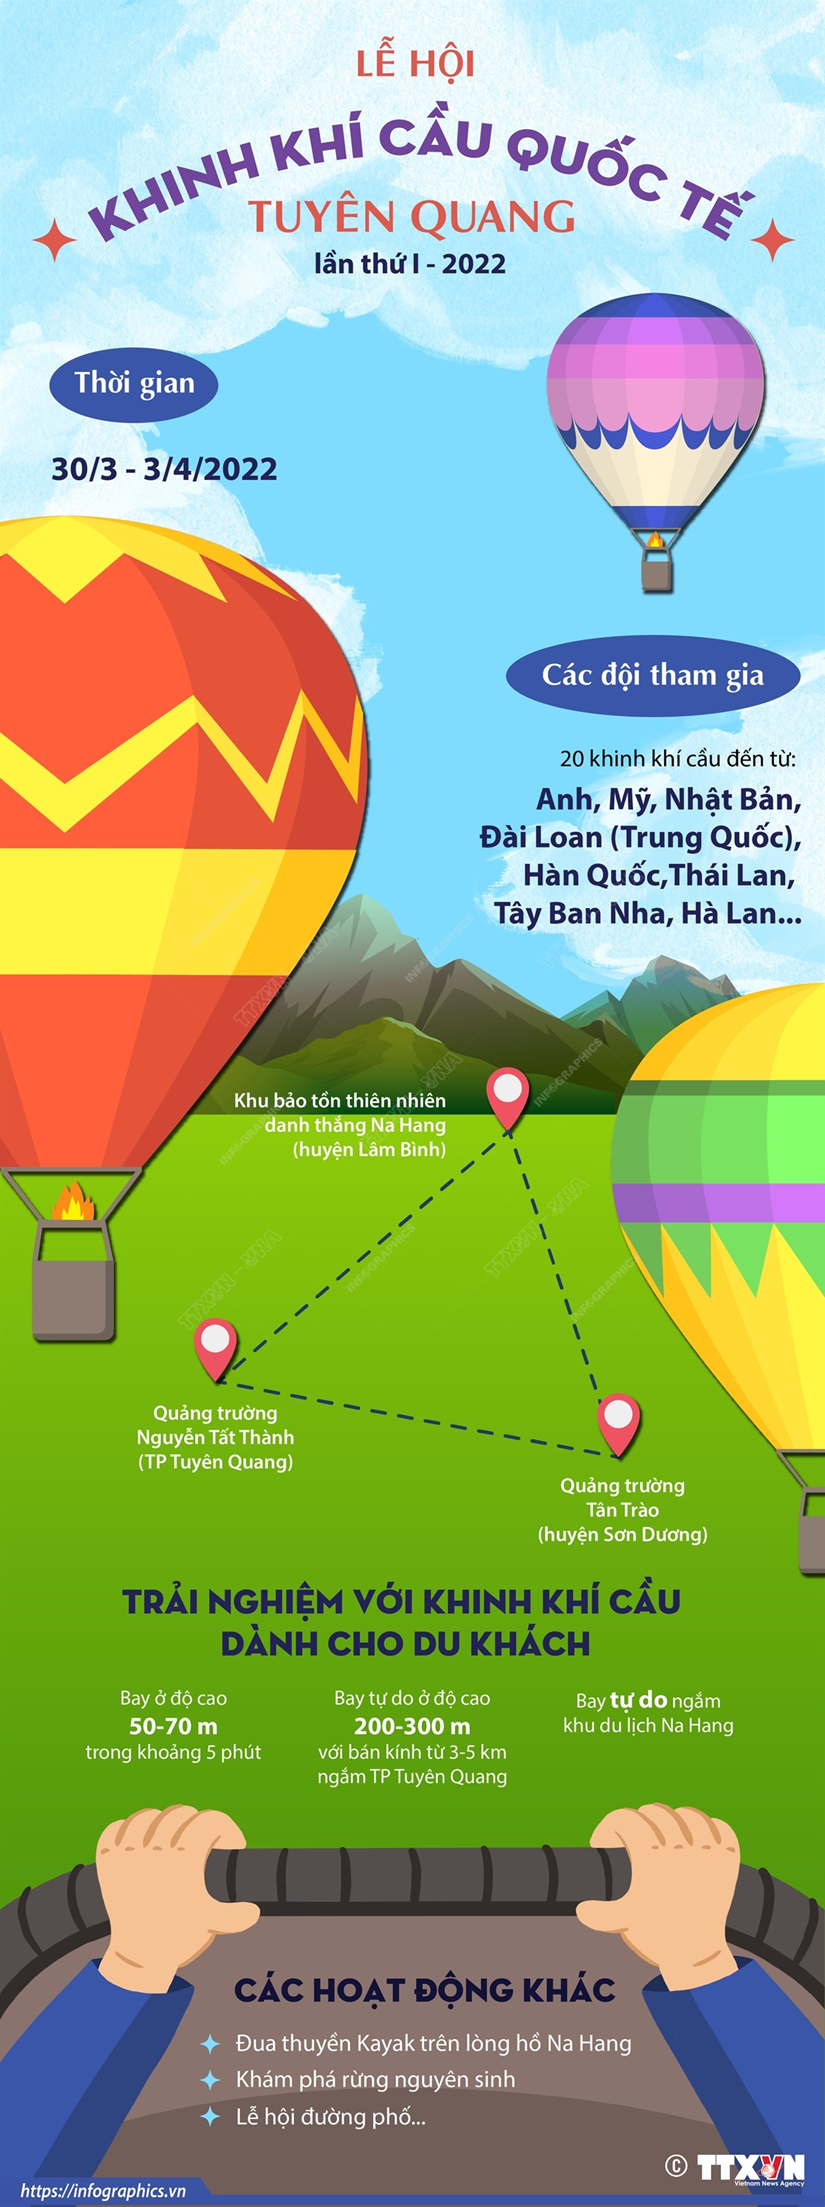 Lễ hội khinh khí cầu quốc tế Tuyên Quang